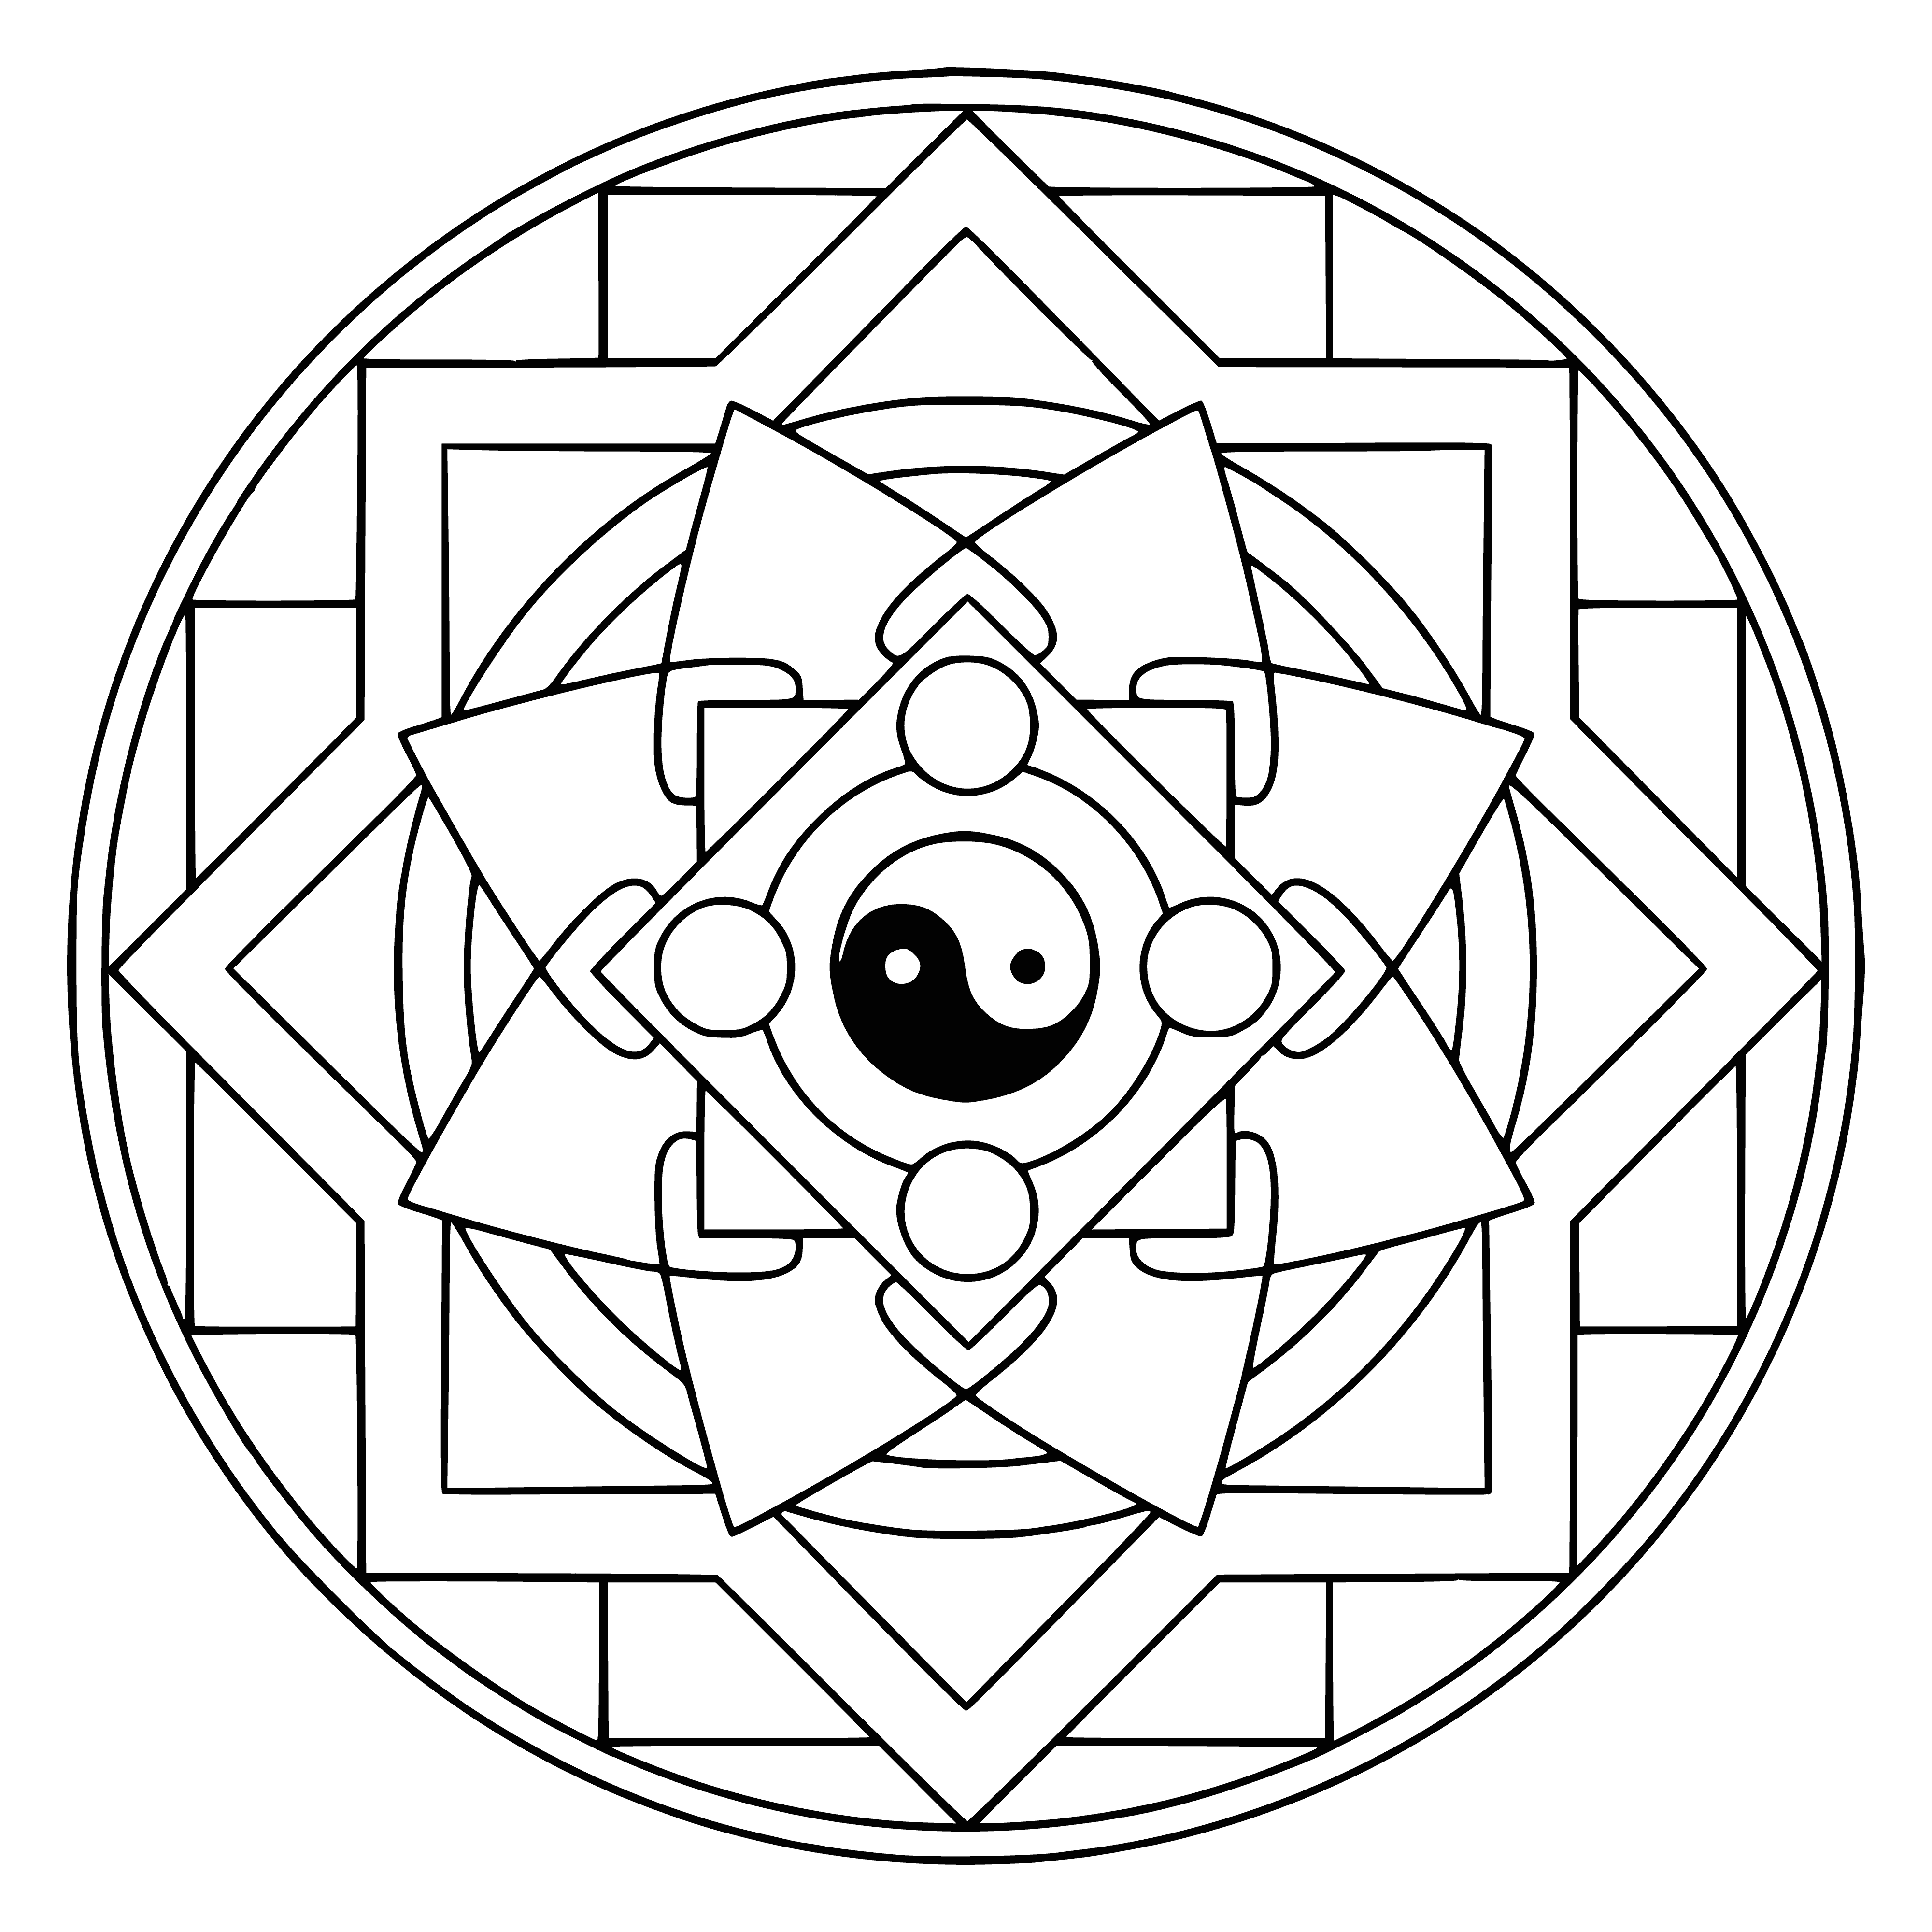 Yin yang mandala coloring page